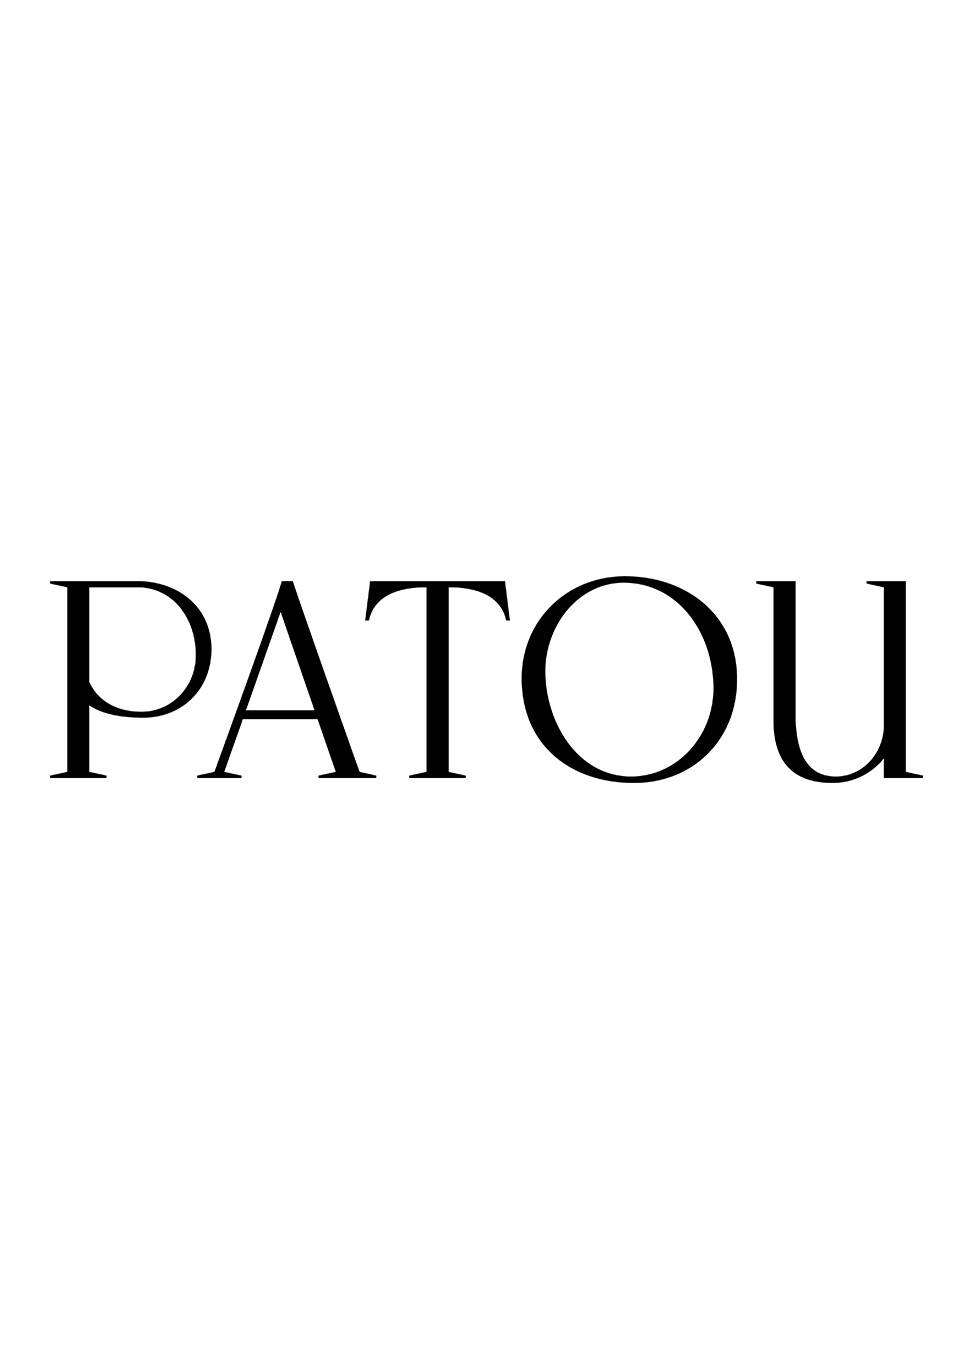 Patou - LVMH